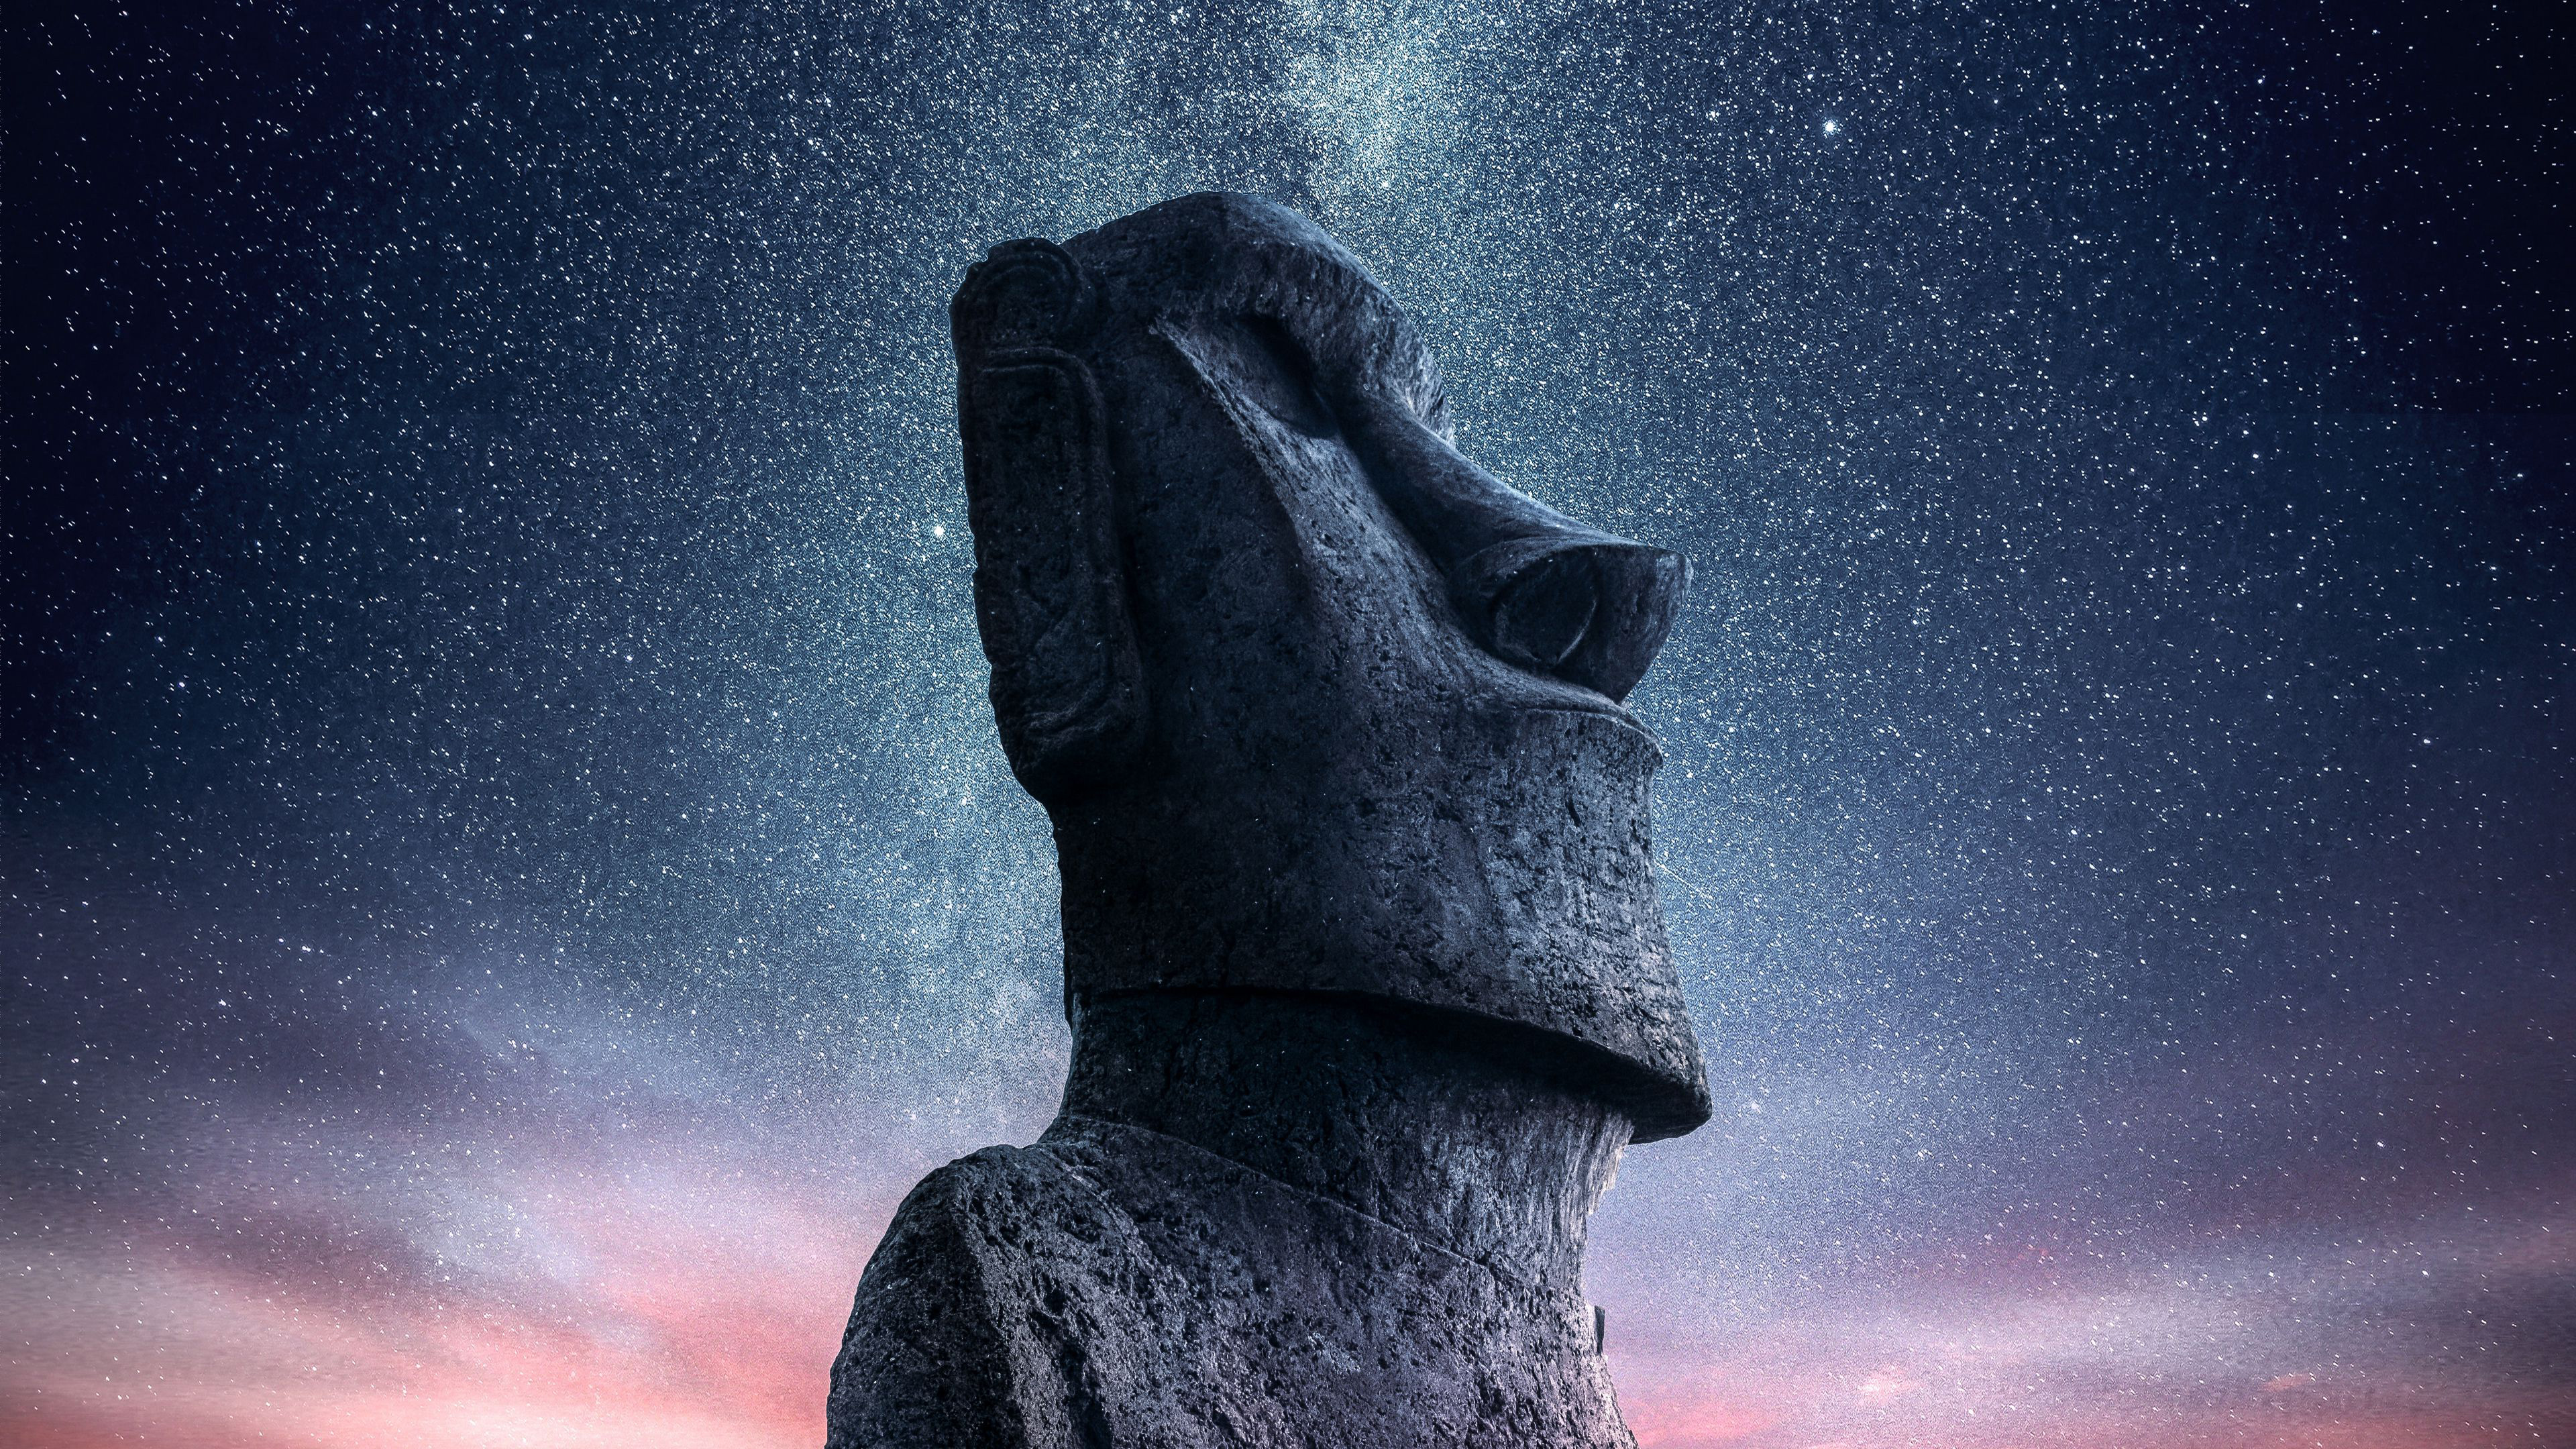 Скачать обои Статуи Моаи на телефон бесплатно